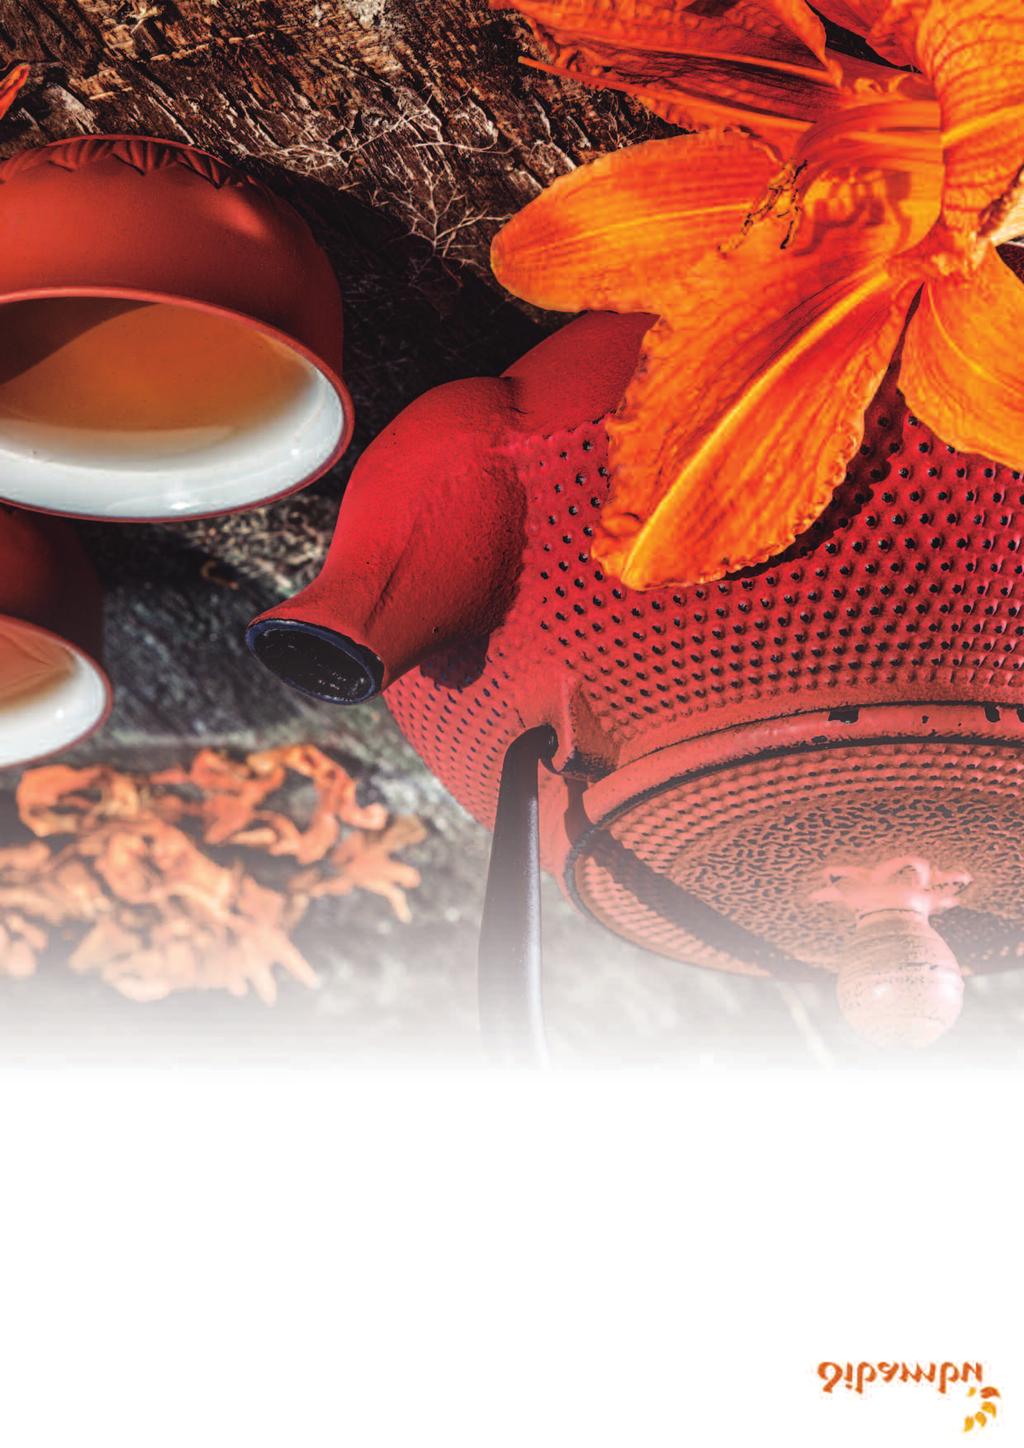 Teteras Las teteras de hierro fundido, conocidas como Tetsubin, son una combinación de utilidad y arte de origen japonés utilizadas para elaborar y servir el té.